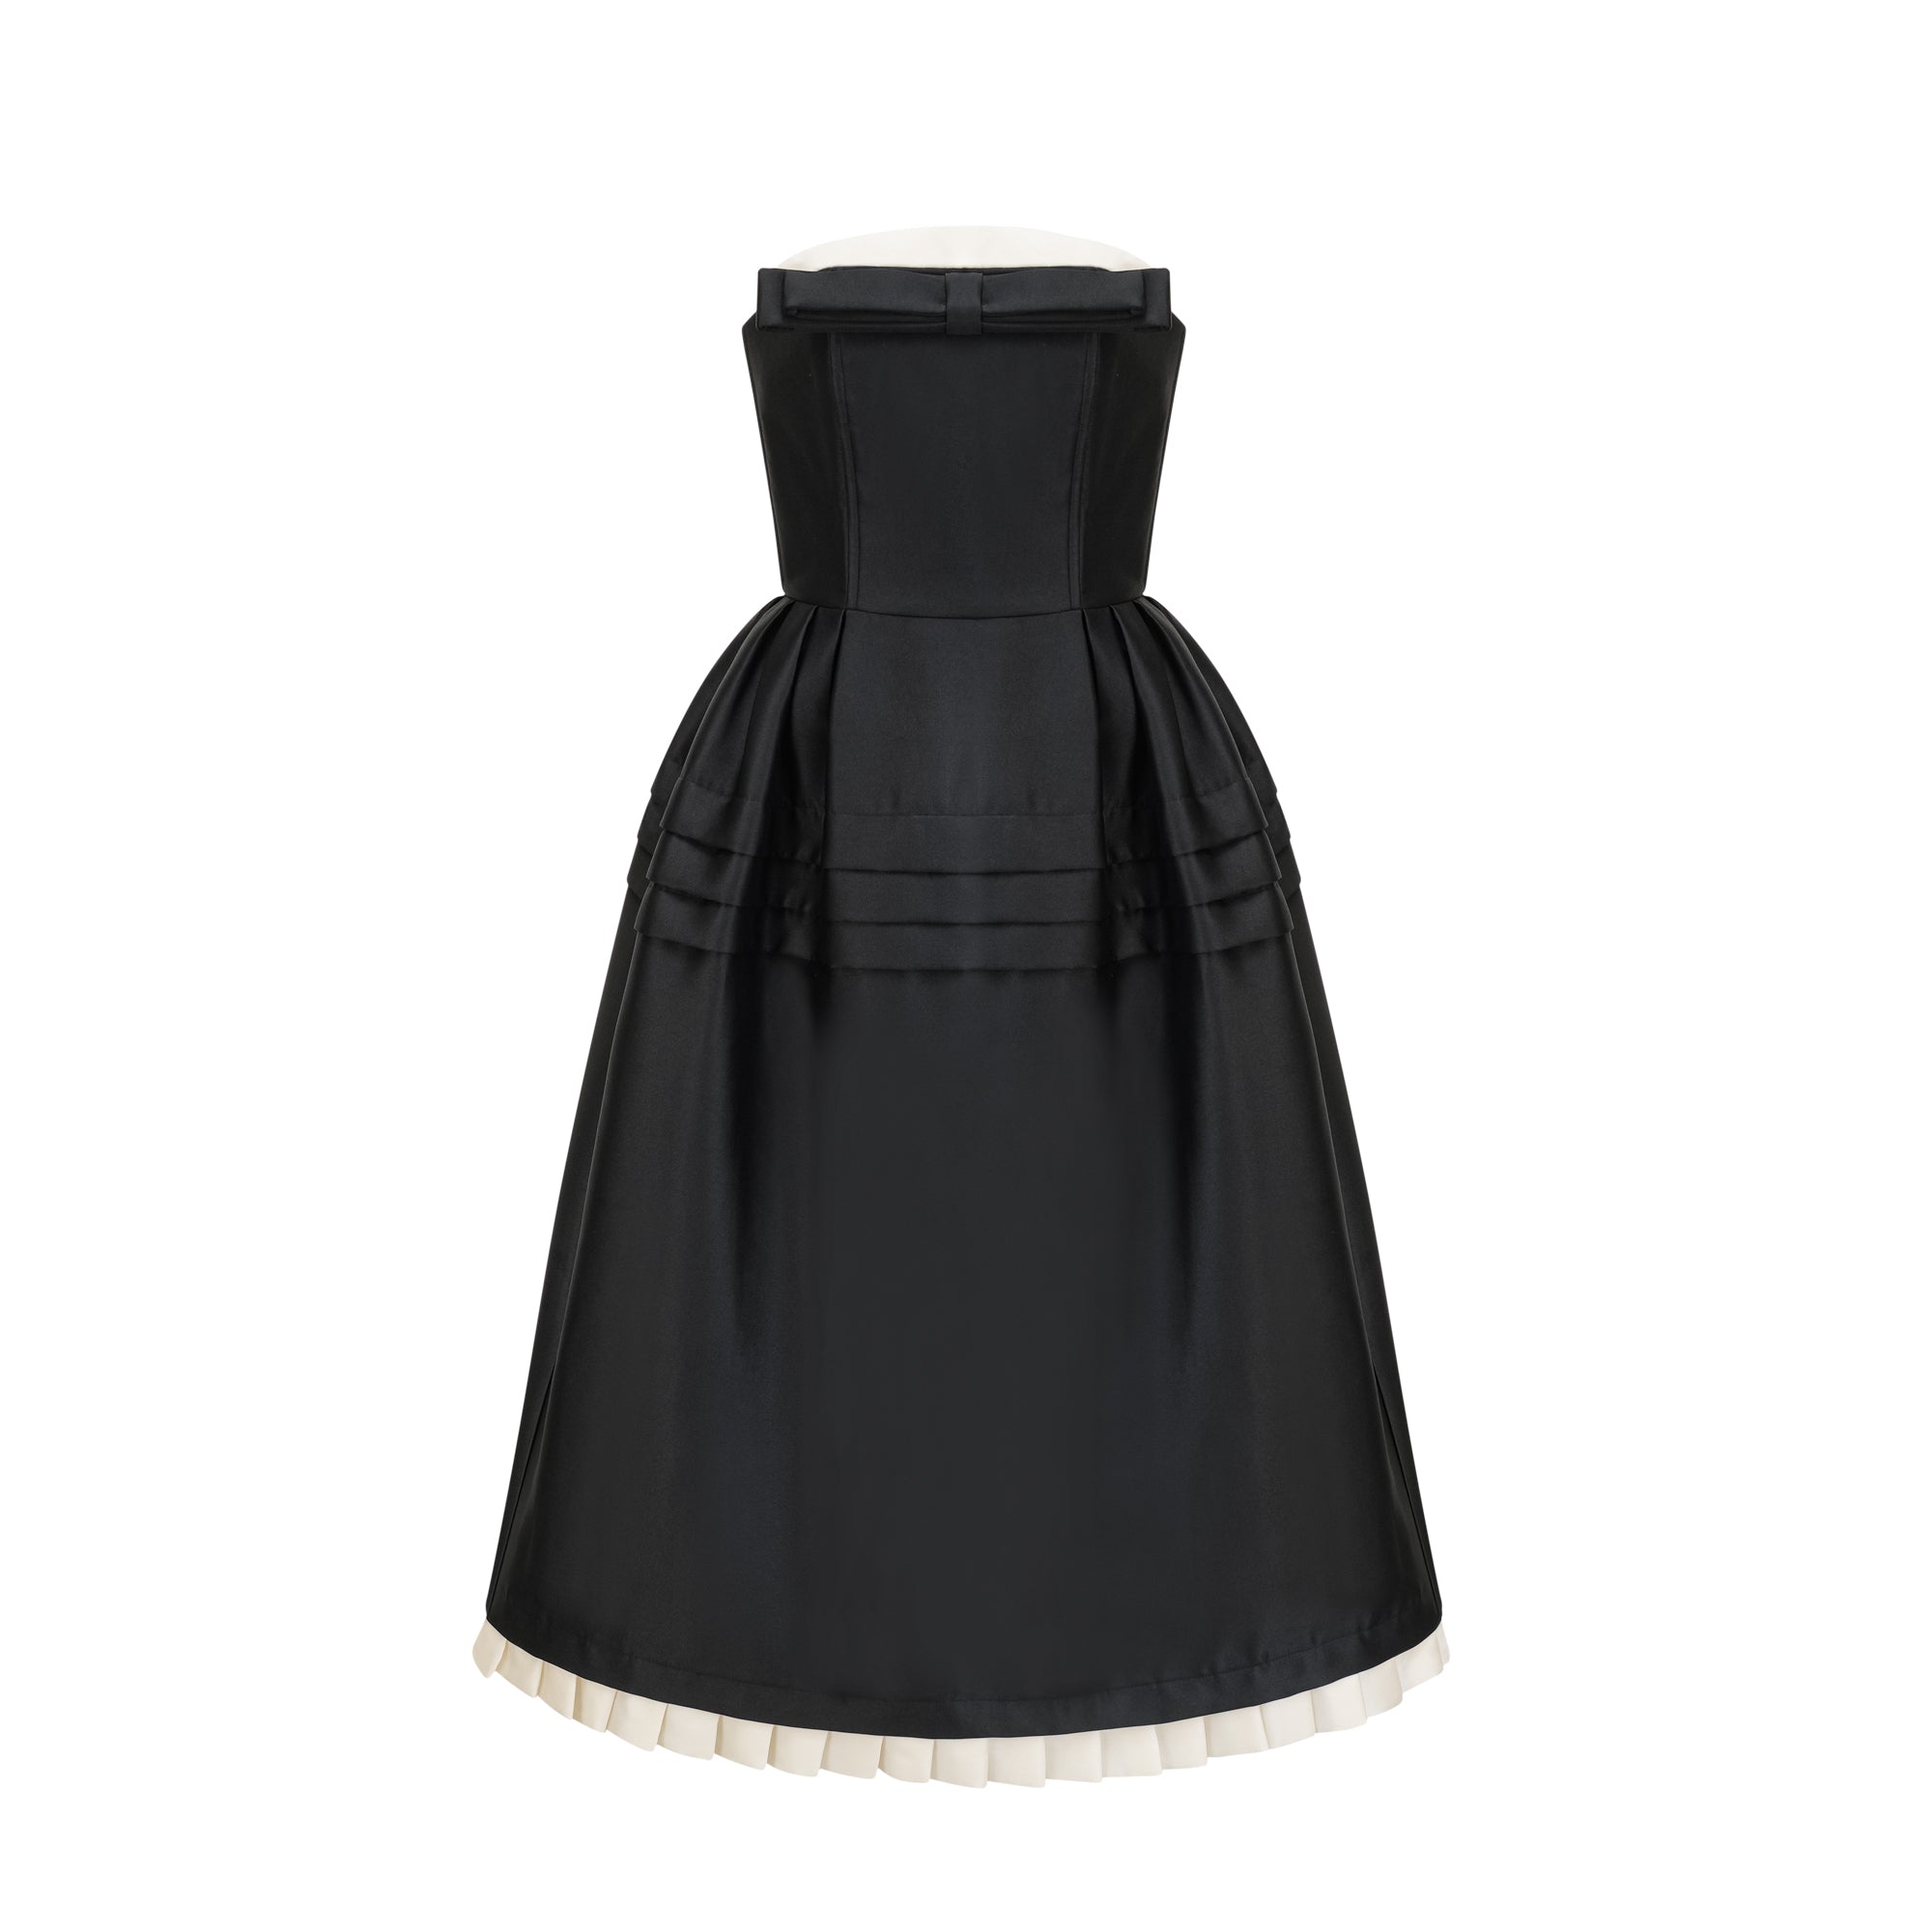 Felisara Chanel dress - Miss Rosier - Women's Online Boutique